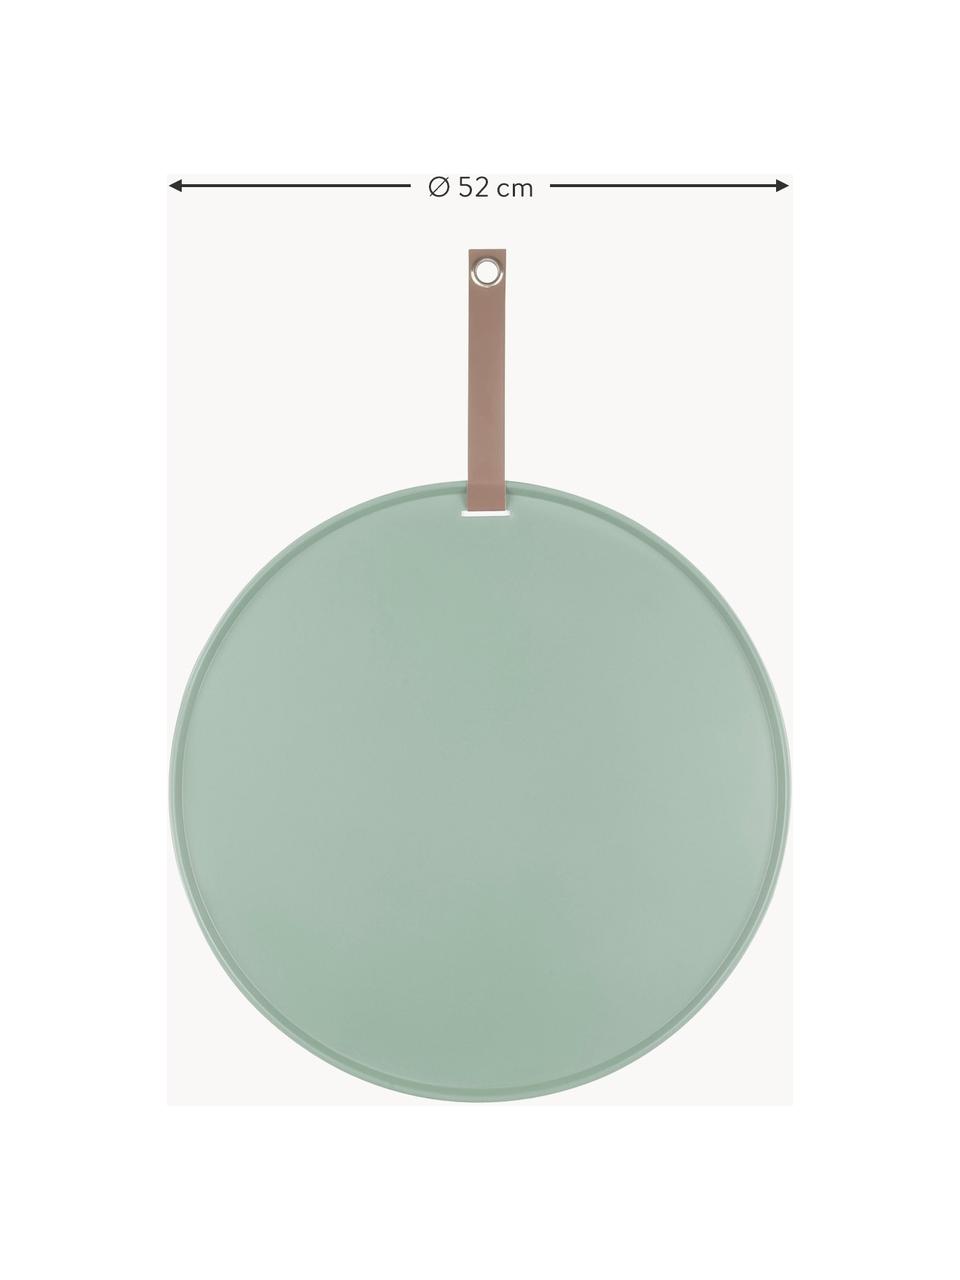 Magnetická nástenka Perky, Polyuretán, Šalviová, hnedá, Ø 52